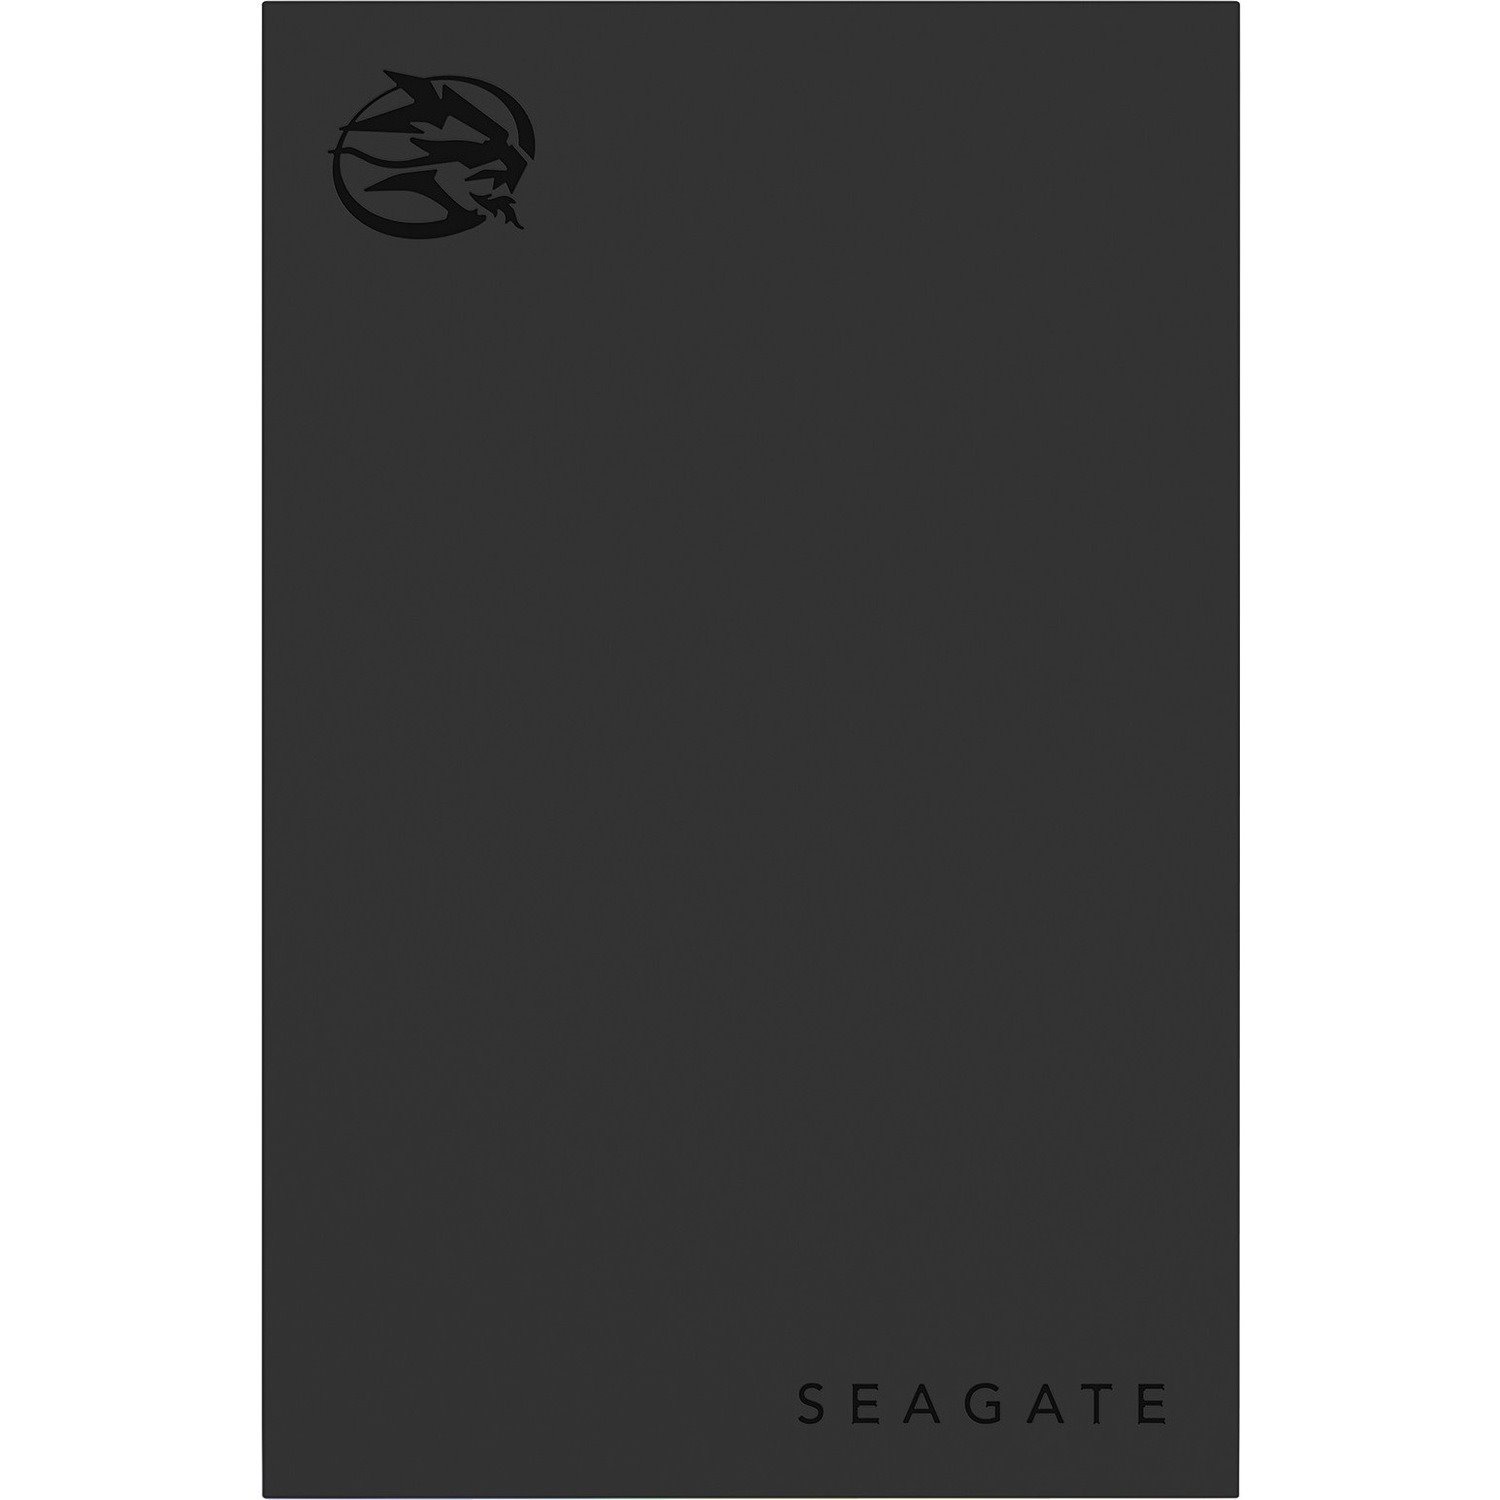 Seagate FireCuda STKL1000400 1 TB Hard Drive - External